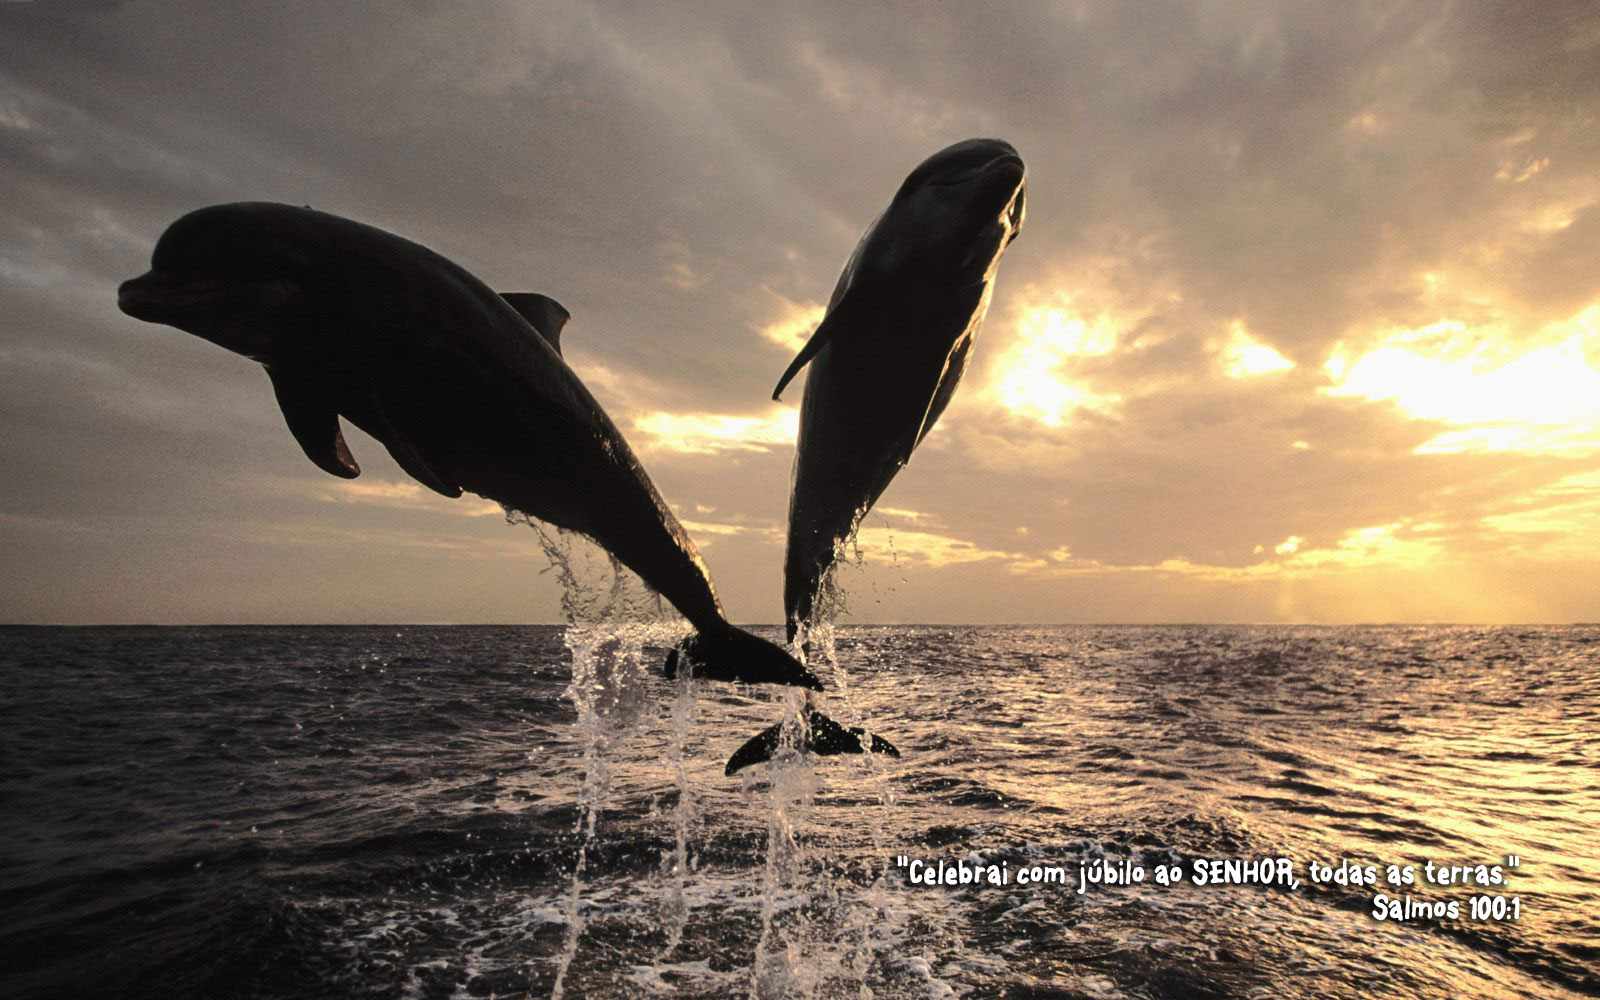 http://www.devocionaldiario.com.br/imagens/dolphins_w.jpg